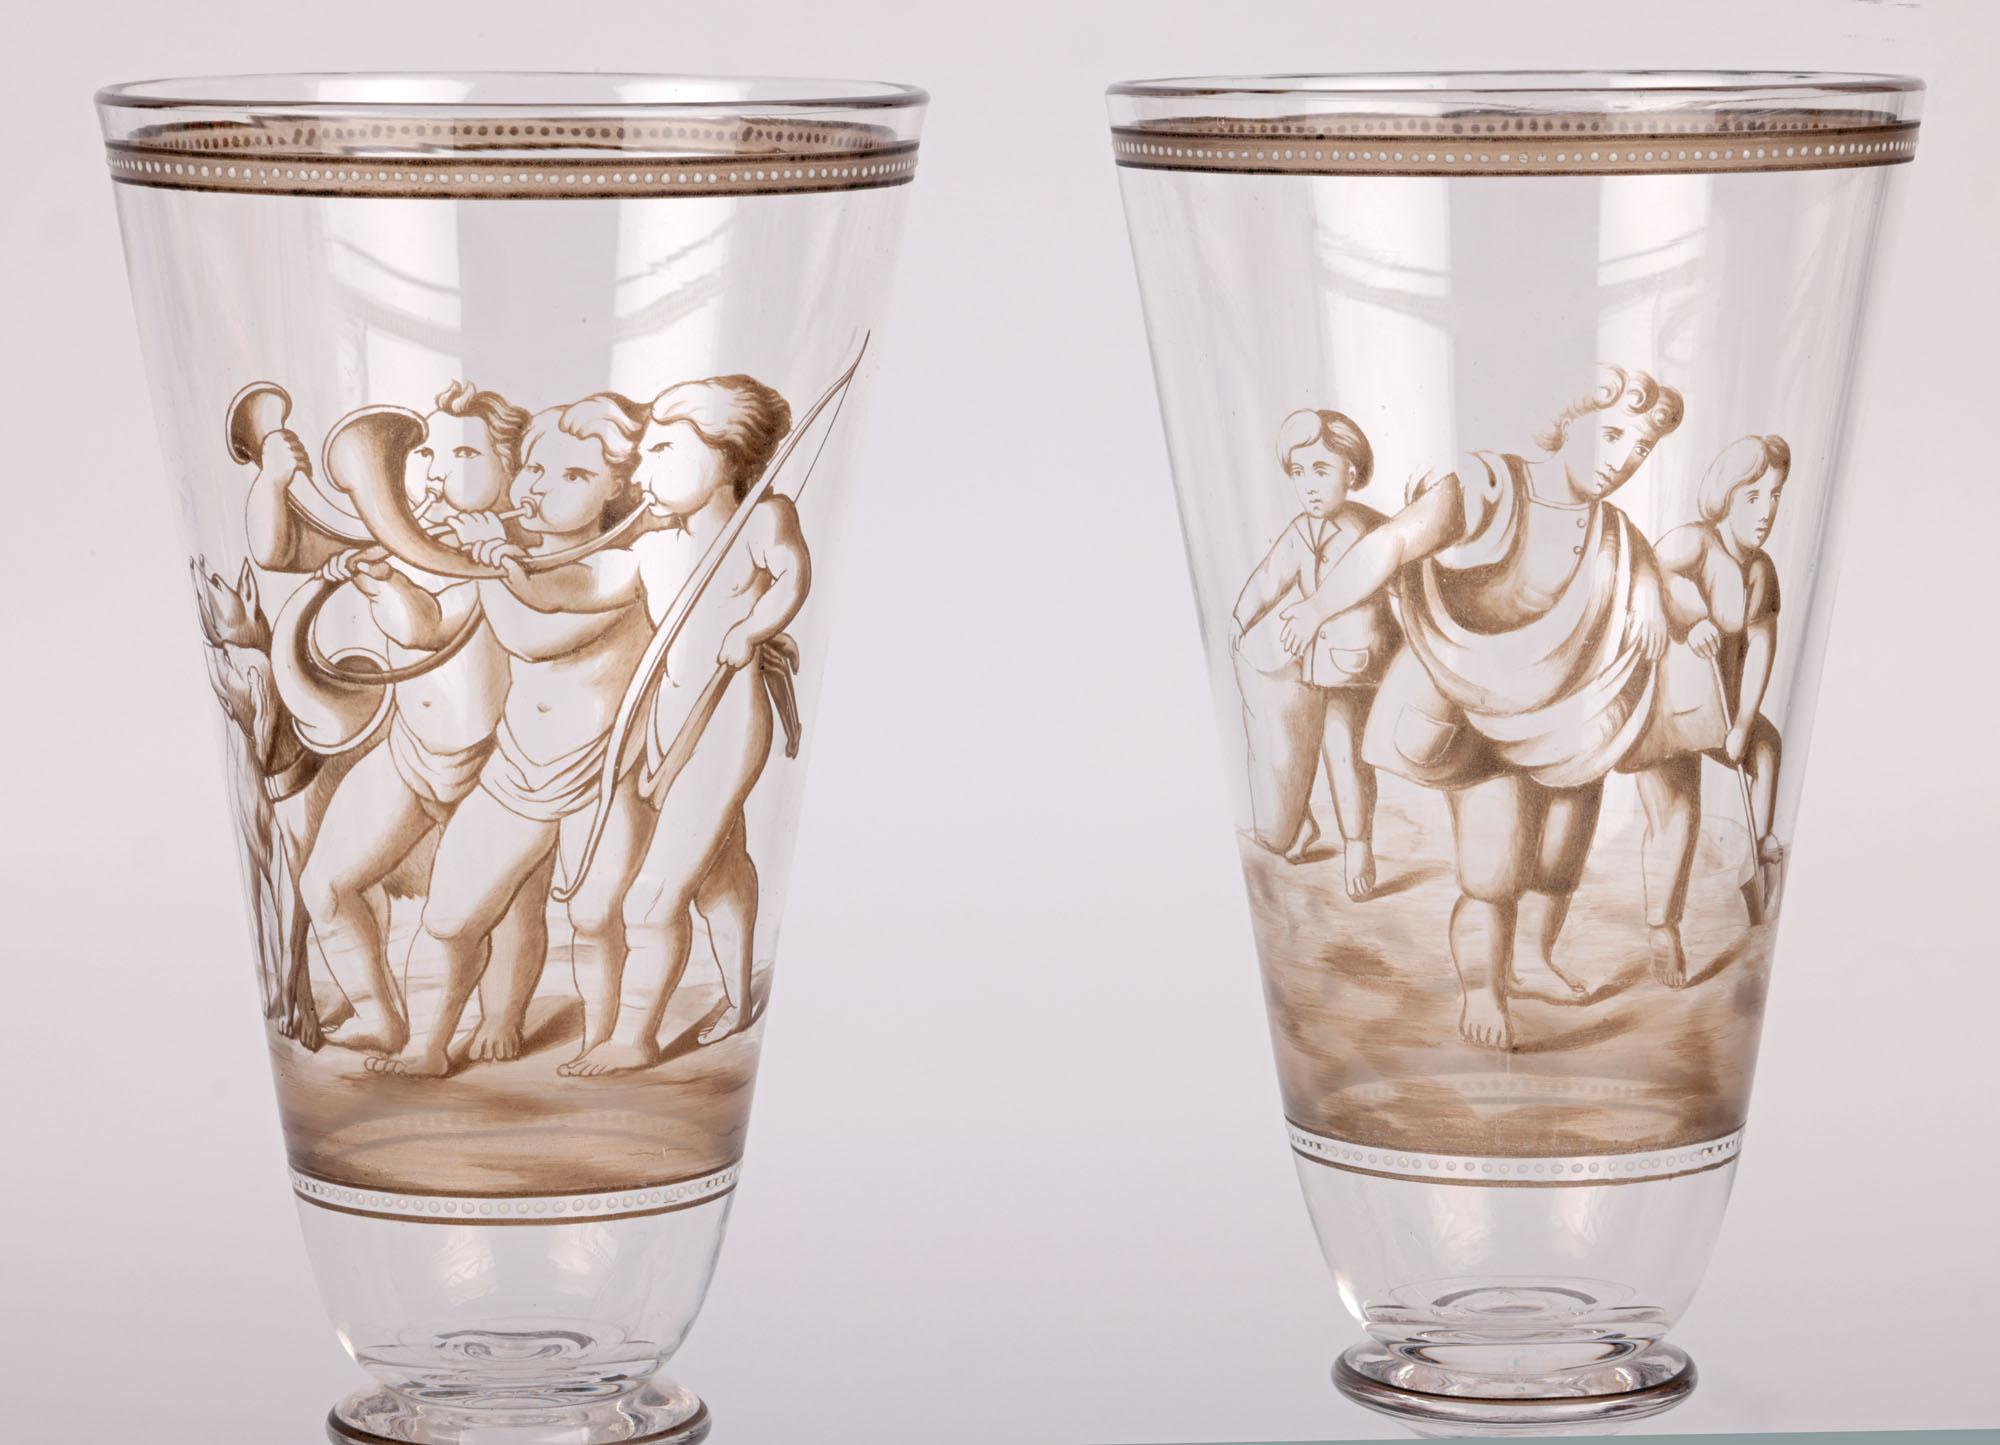 Ein erstaunliches Paar ungewöhnlicher europäischer Glaspokale mit feiner Emaillierung, die der Wiener Werkstatte zugeschrieben werden und aus dem frühen 20. Jahrhundert stammen. Die mundgeblasenen Kelche stehen auf einem geformten runden Sockelfuß